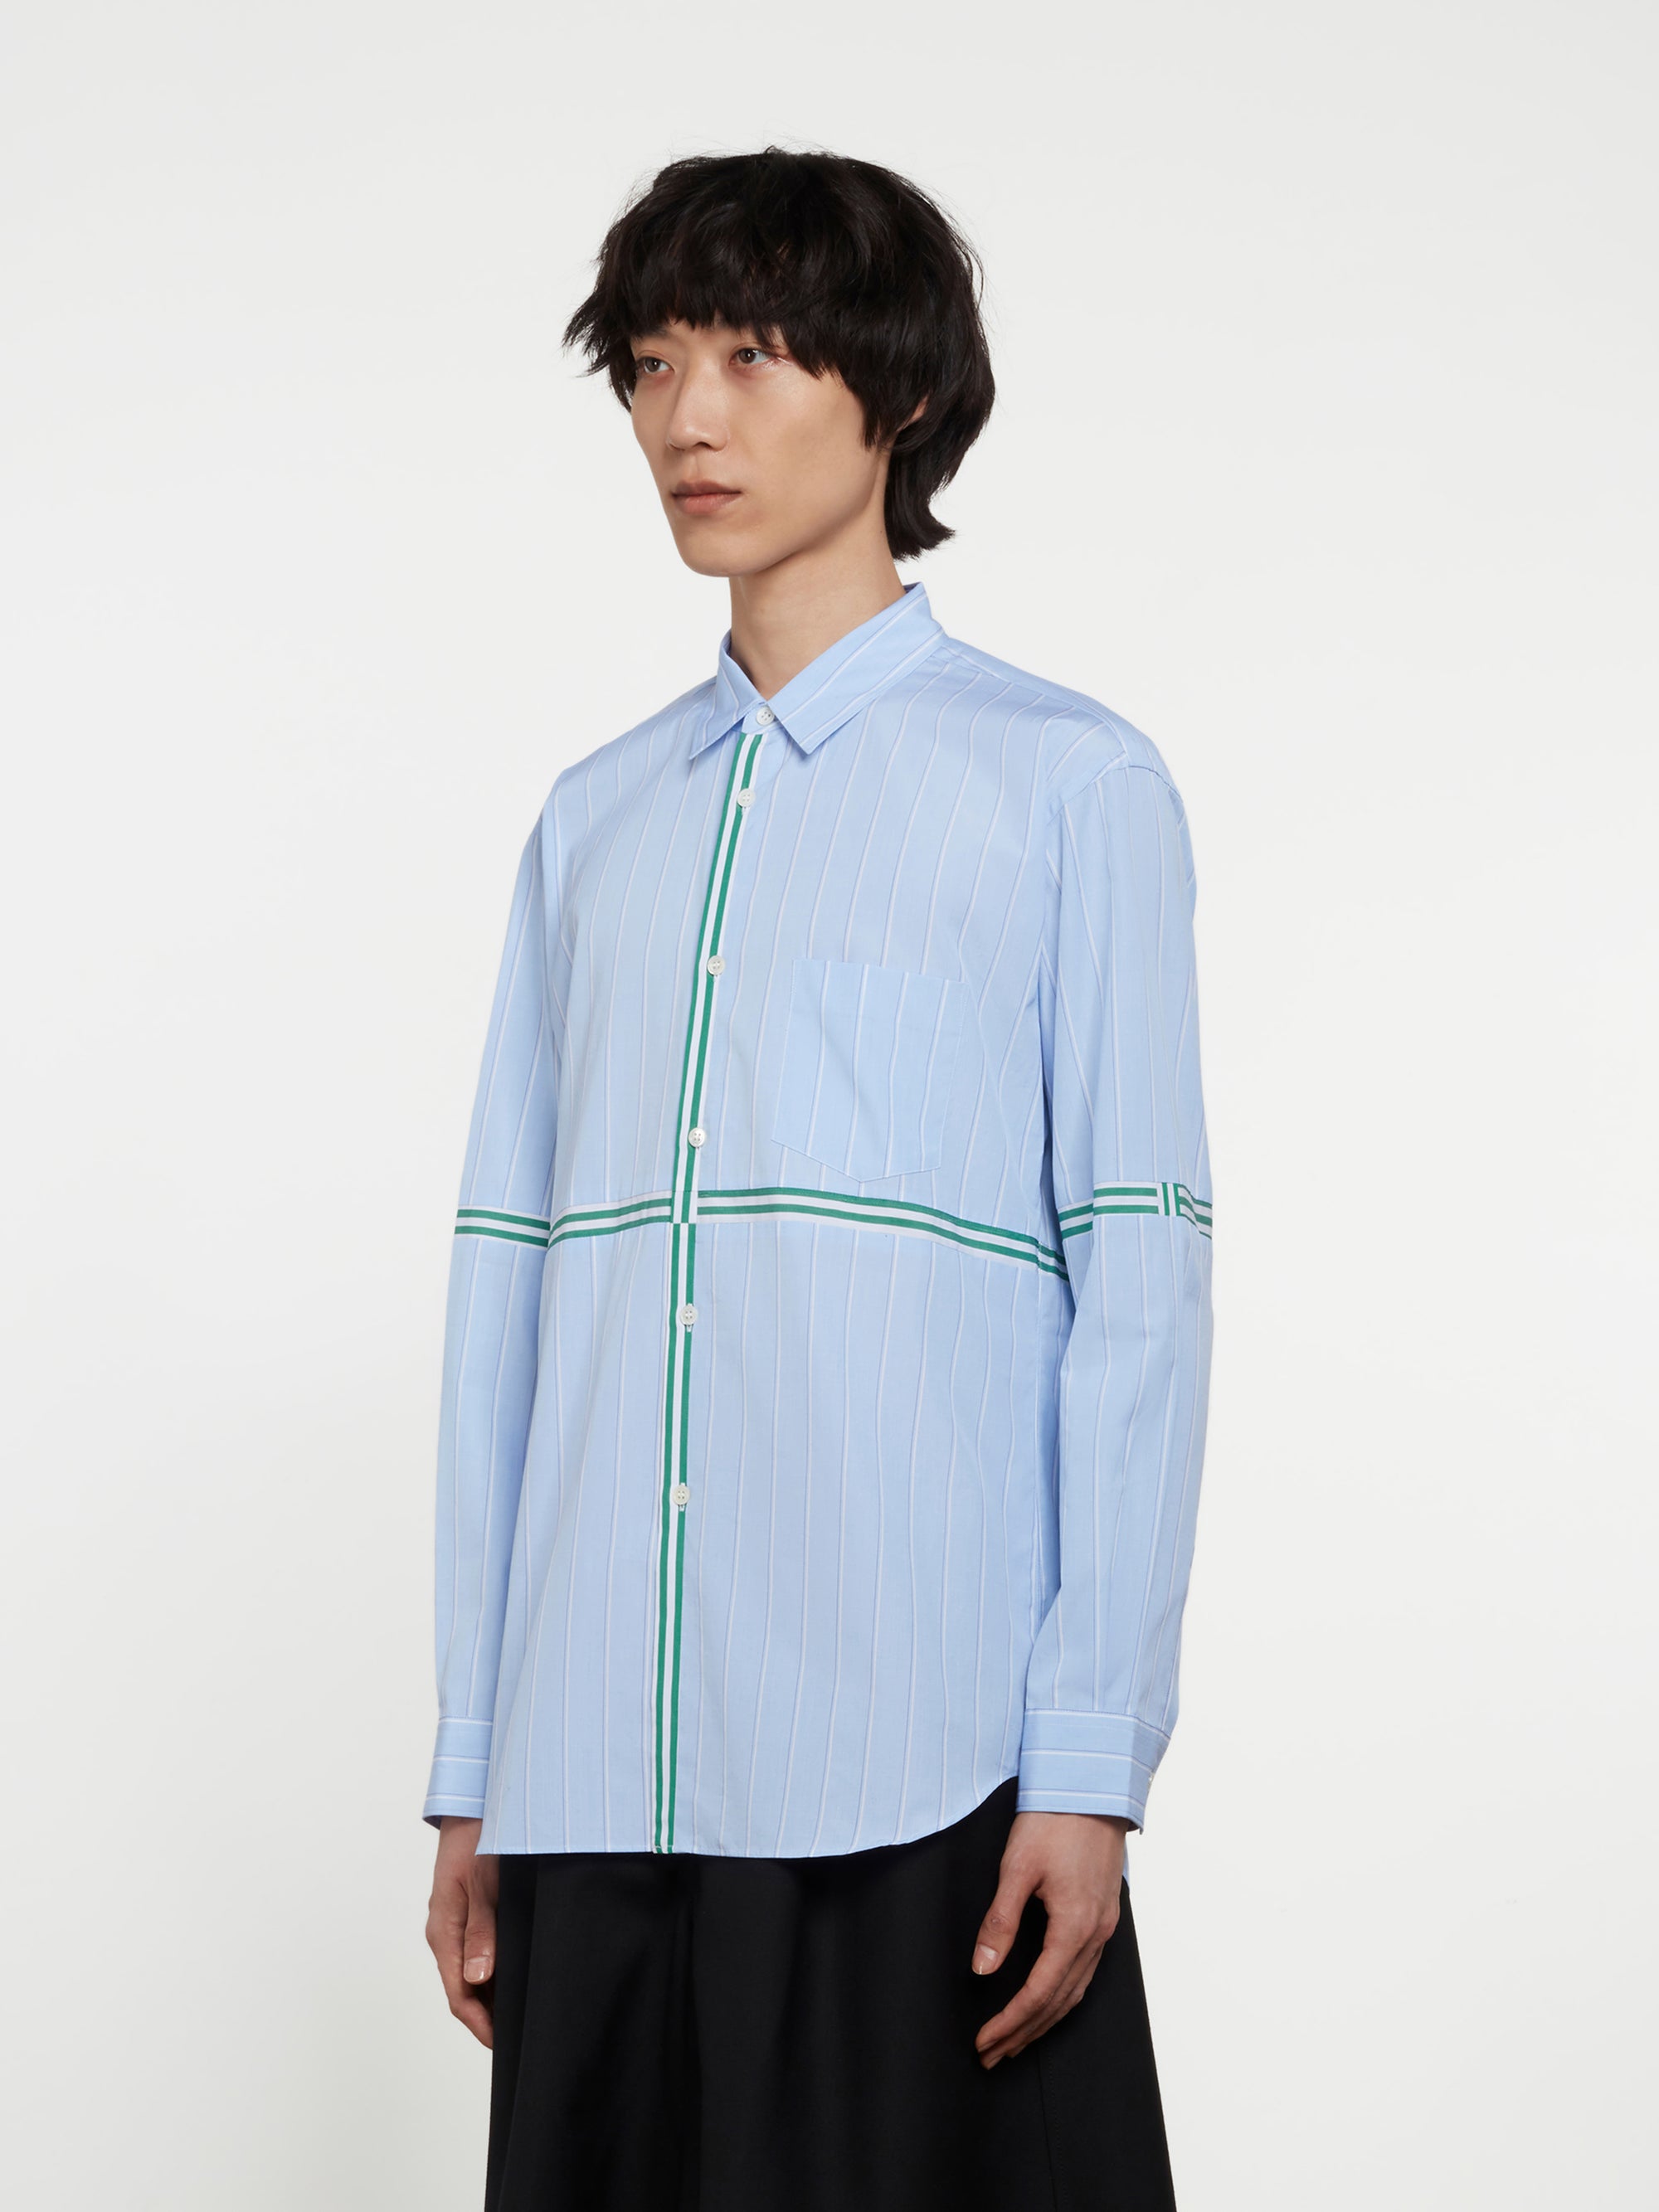 CDG Shirt - Men's Yarn Dyed Stripe Shirt - (Stripe) view 2